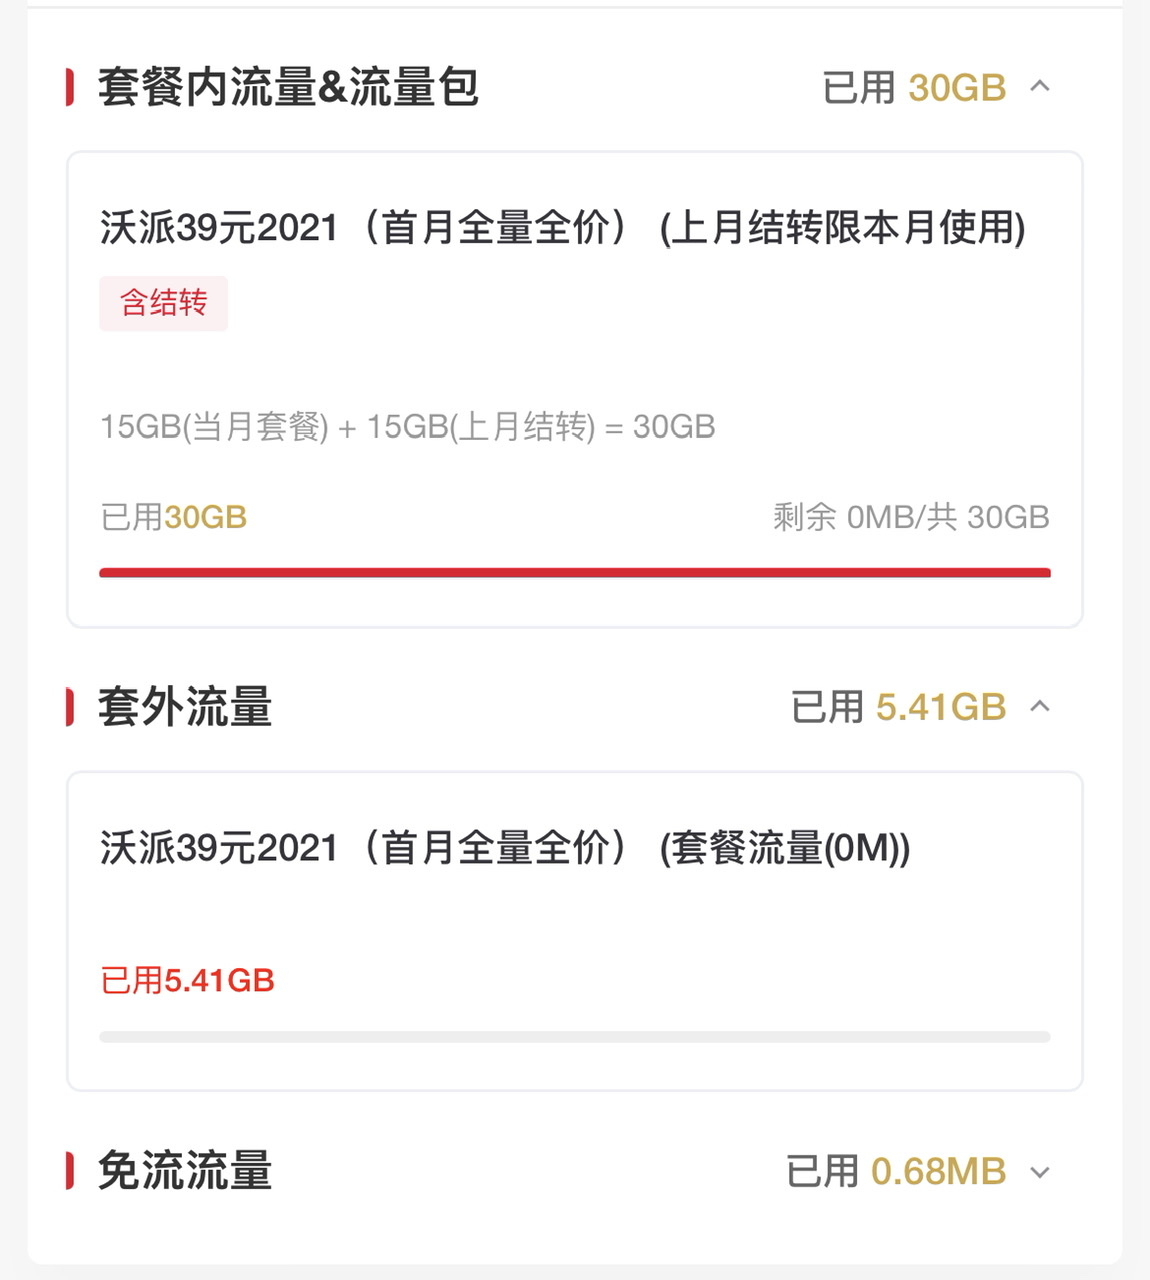 上海联通套外流量用了6GB